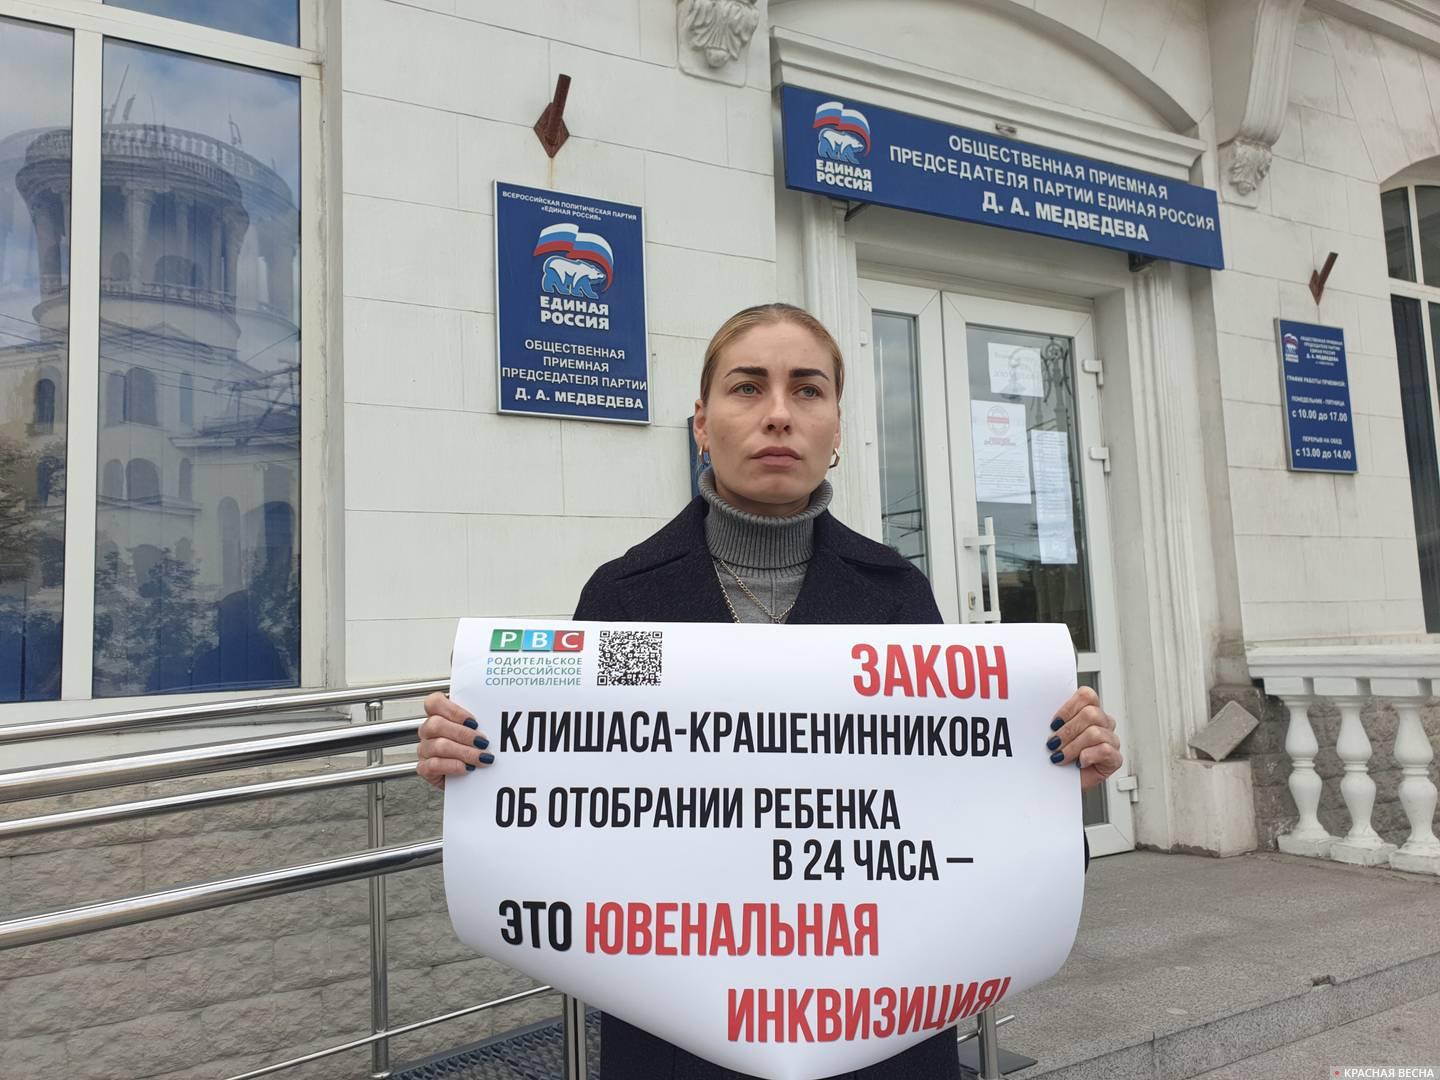 Одиночный пикет против законопроекта Клишаса-Крашенинникова в Севастополе